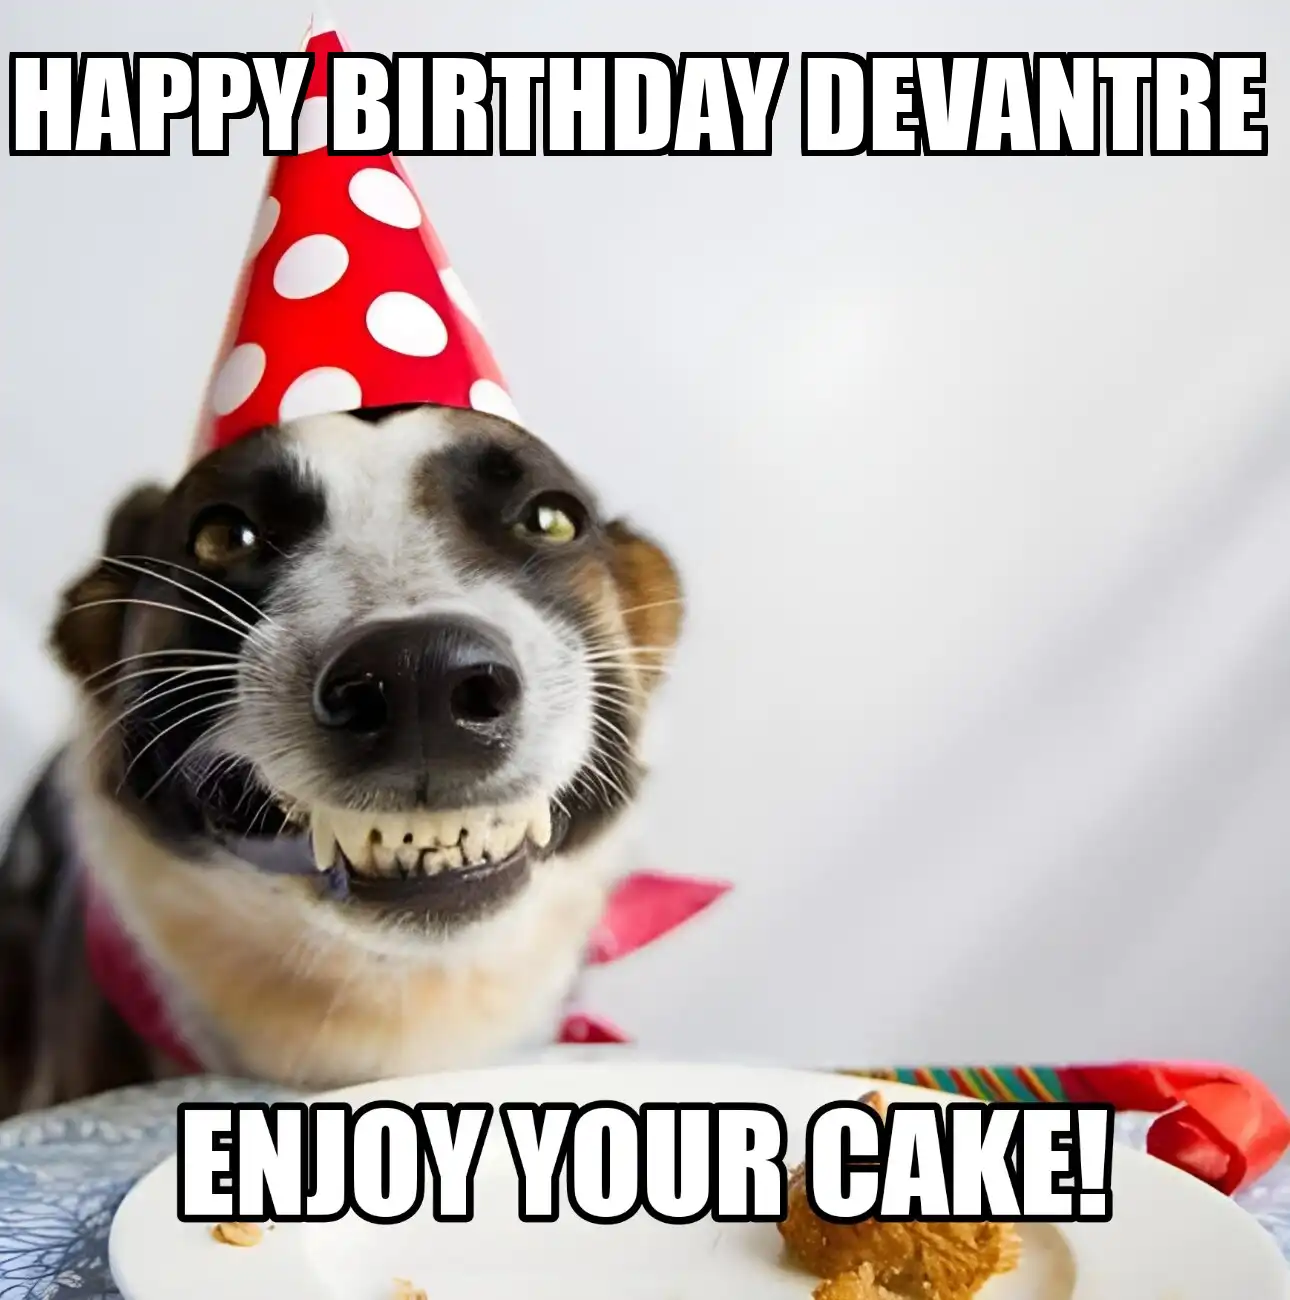 Happy Birthday Devantre Enjoy Your Cake Dog Meme